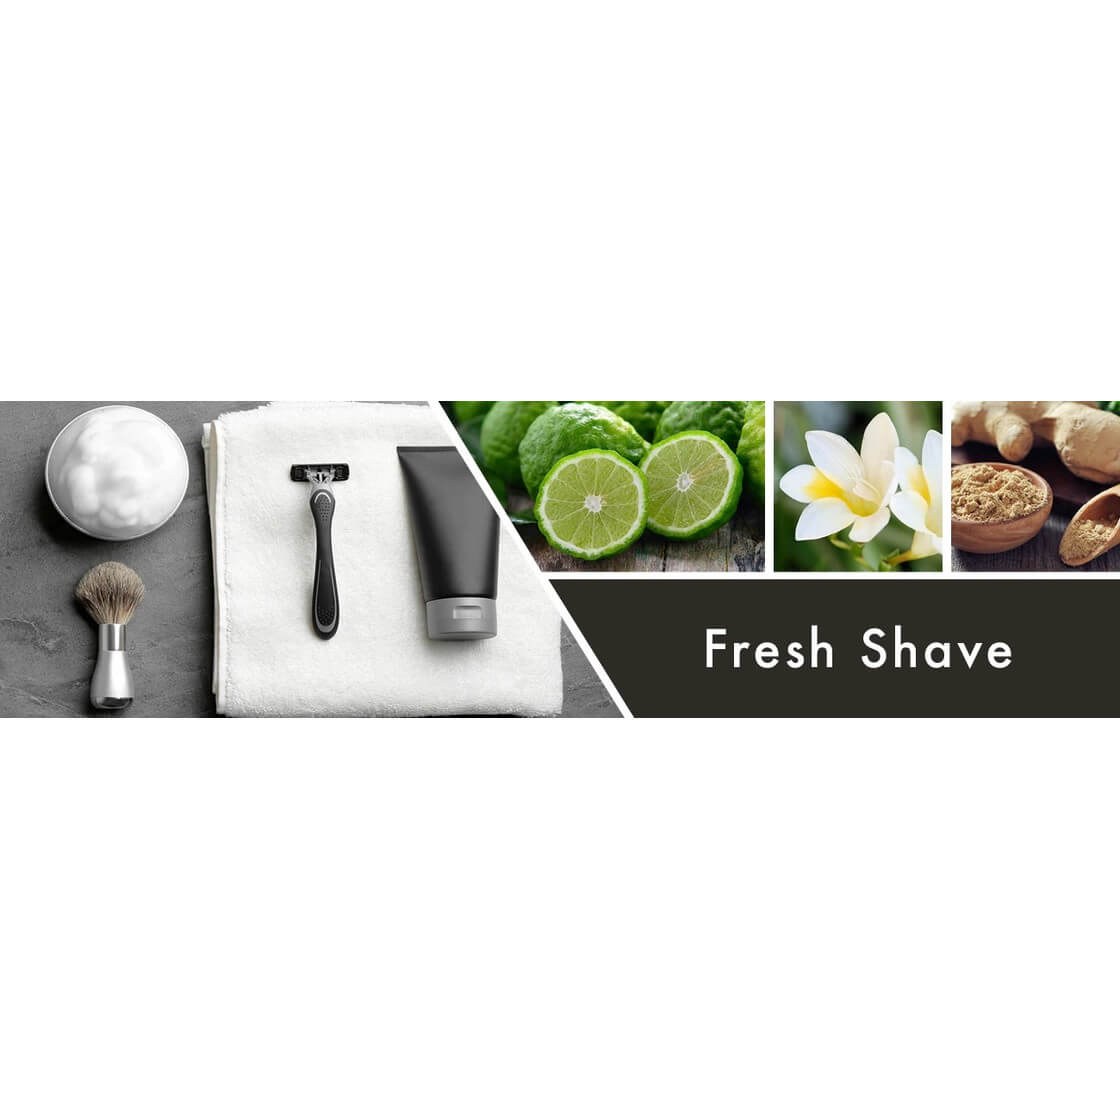 Fresh Shave 453g (Tumbler)